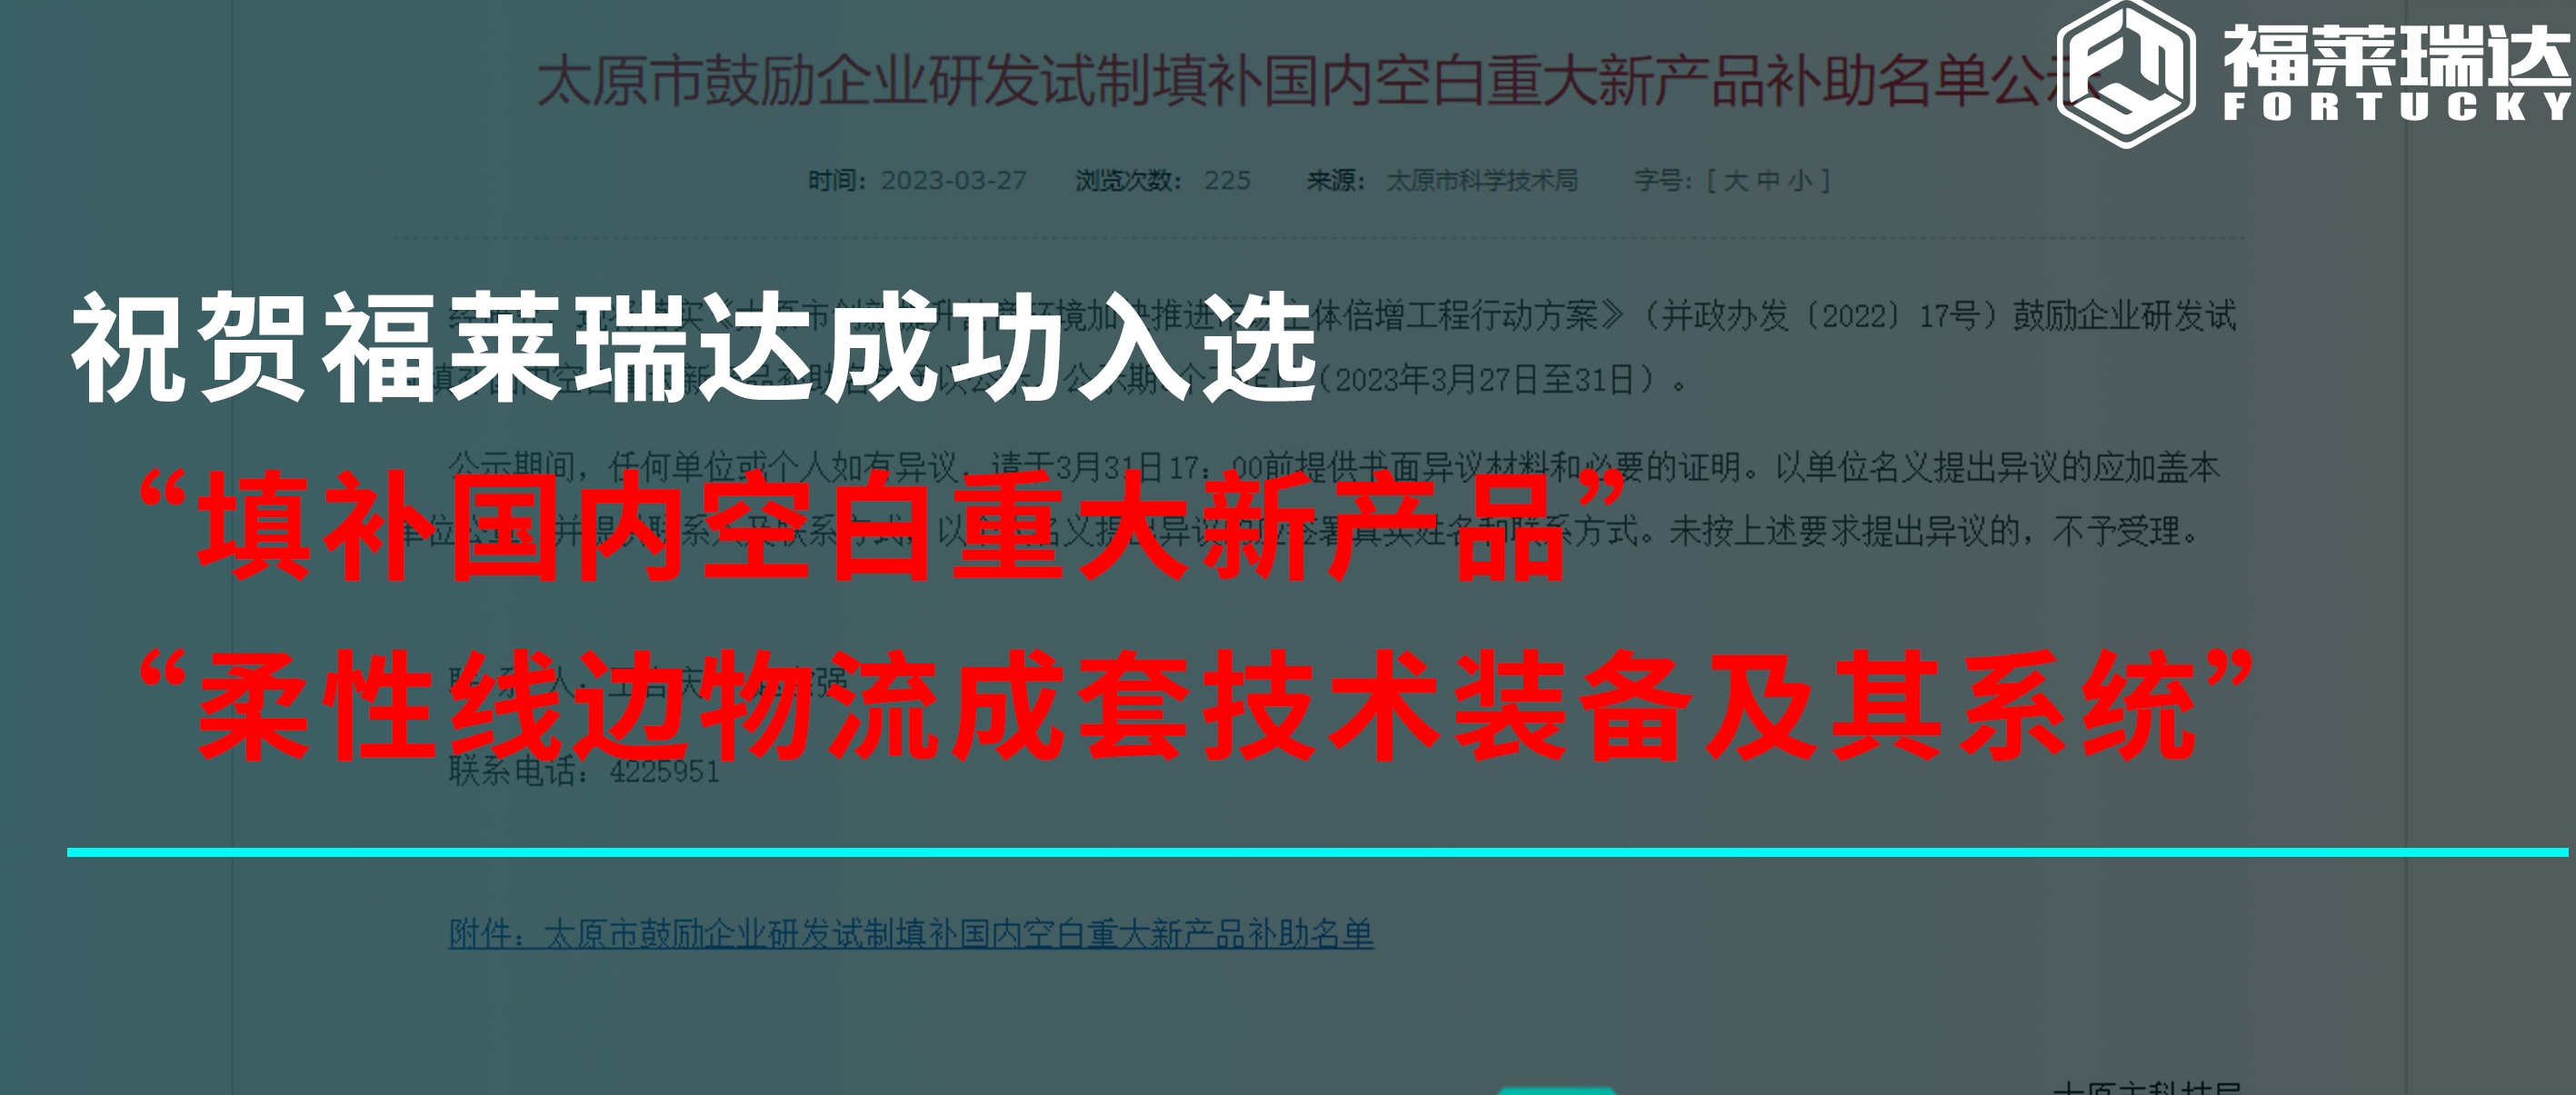 乐动在线(中国)唯一官方网站成功入选“填补国内空白重大新产品”